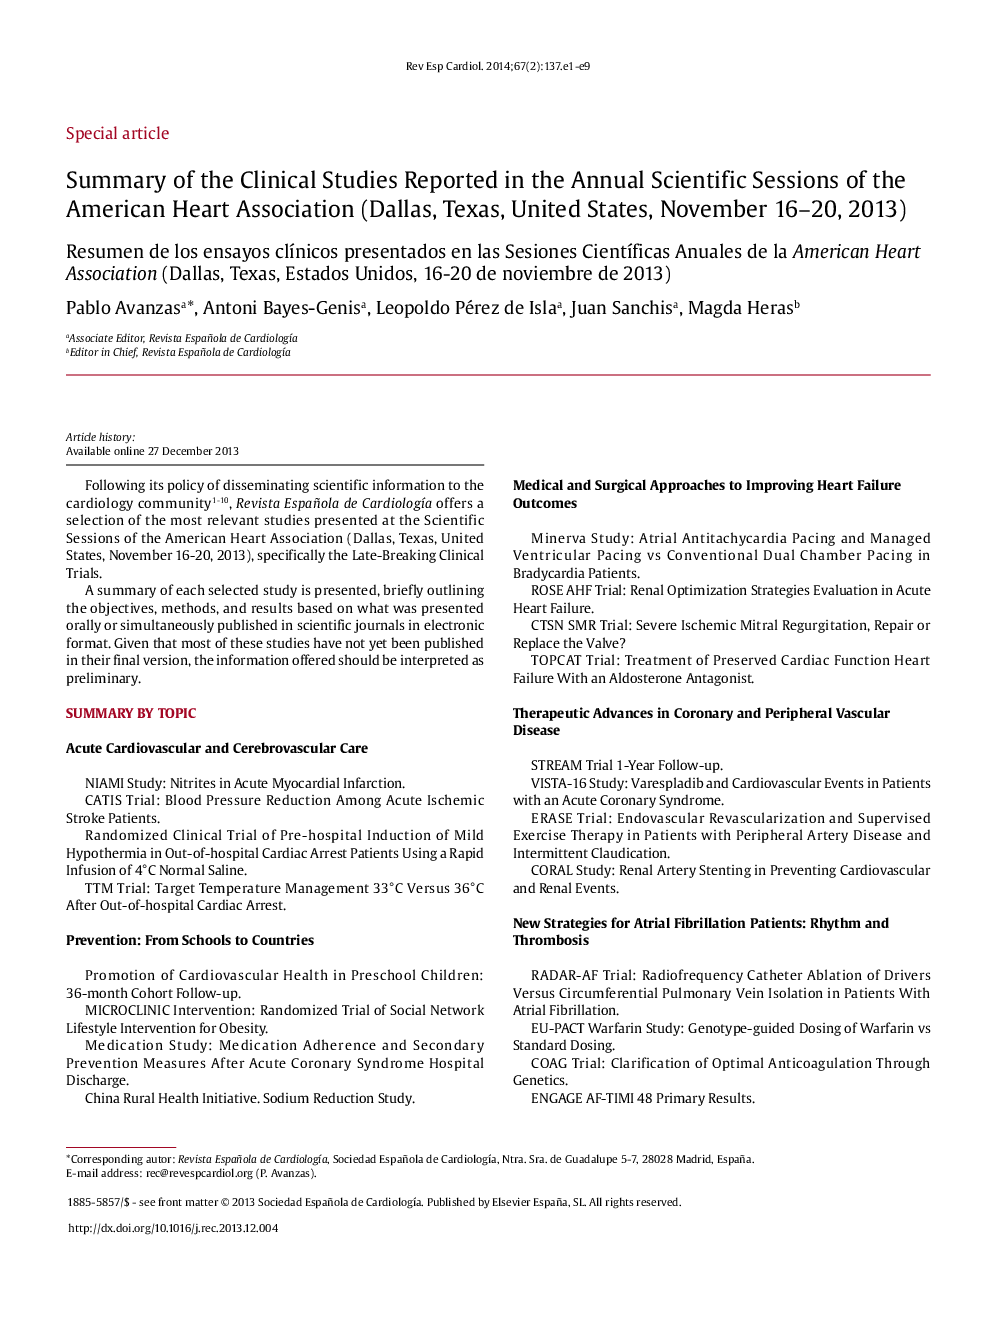 خلاصه ای از مطالعات بالینی گزارش شده در جلسات علمی سالانه انجمن قلب آمریکا (دالاس، تگزاس، ایالات متحده، 16 تا 20 نوامبر 2013) 